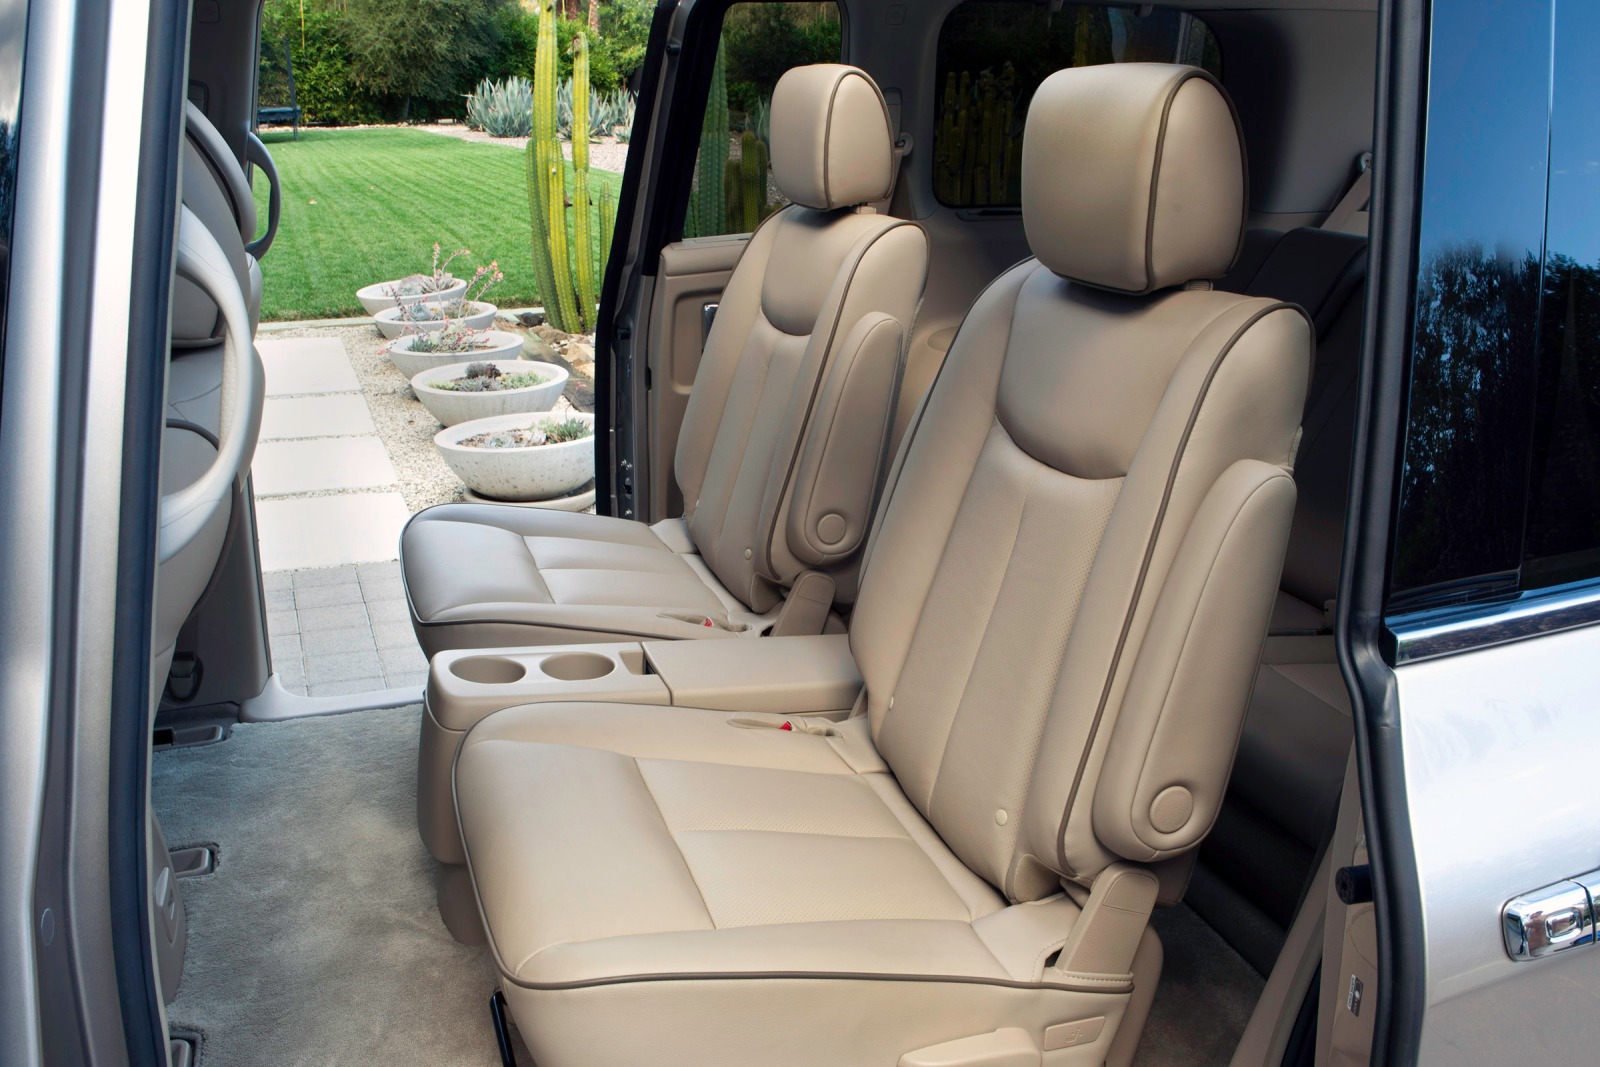 2012 Nissan Quest LE Passenger Minivan Rear Interior